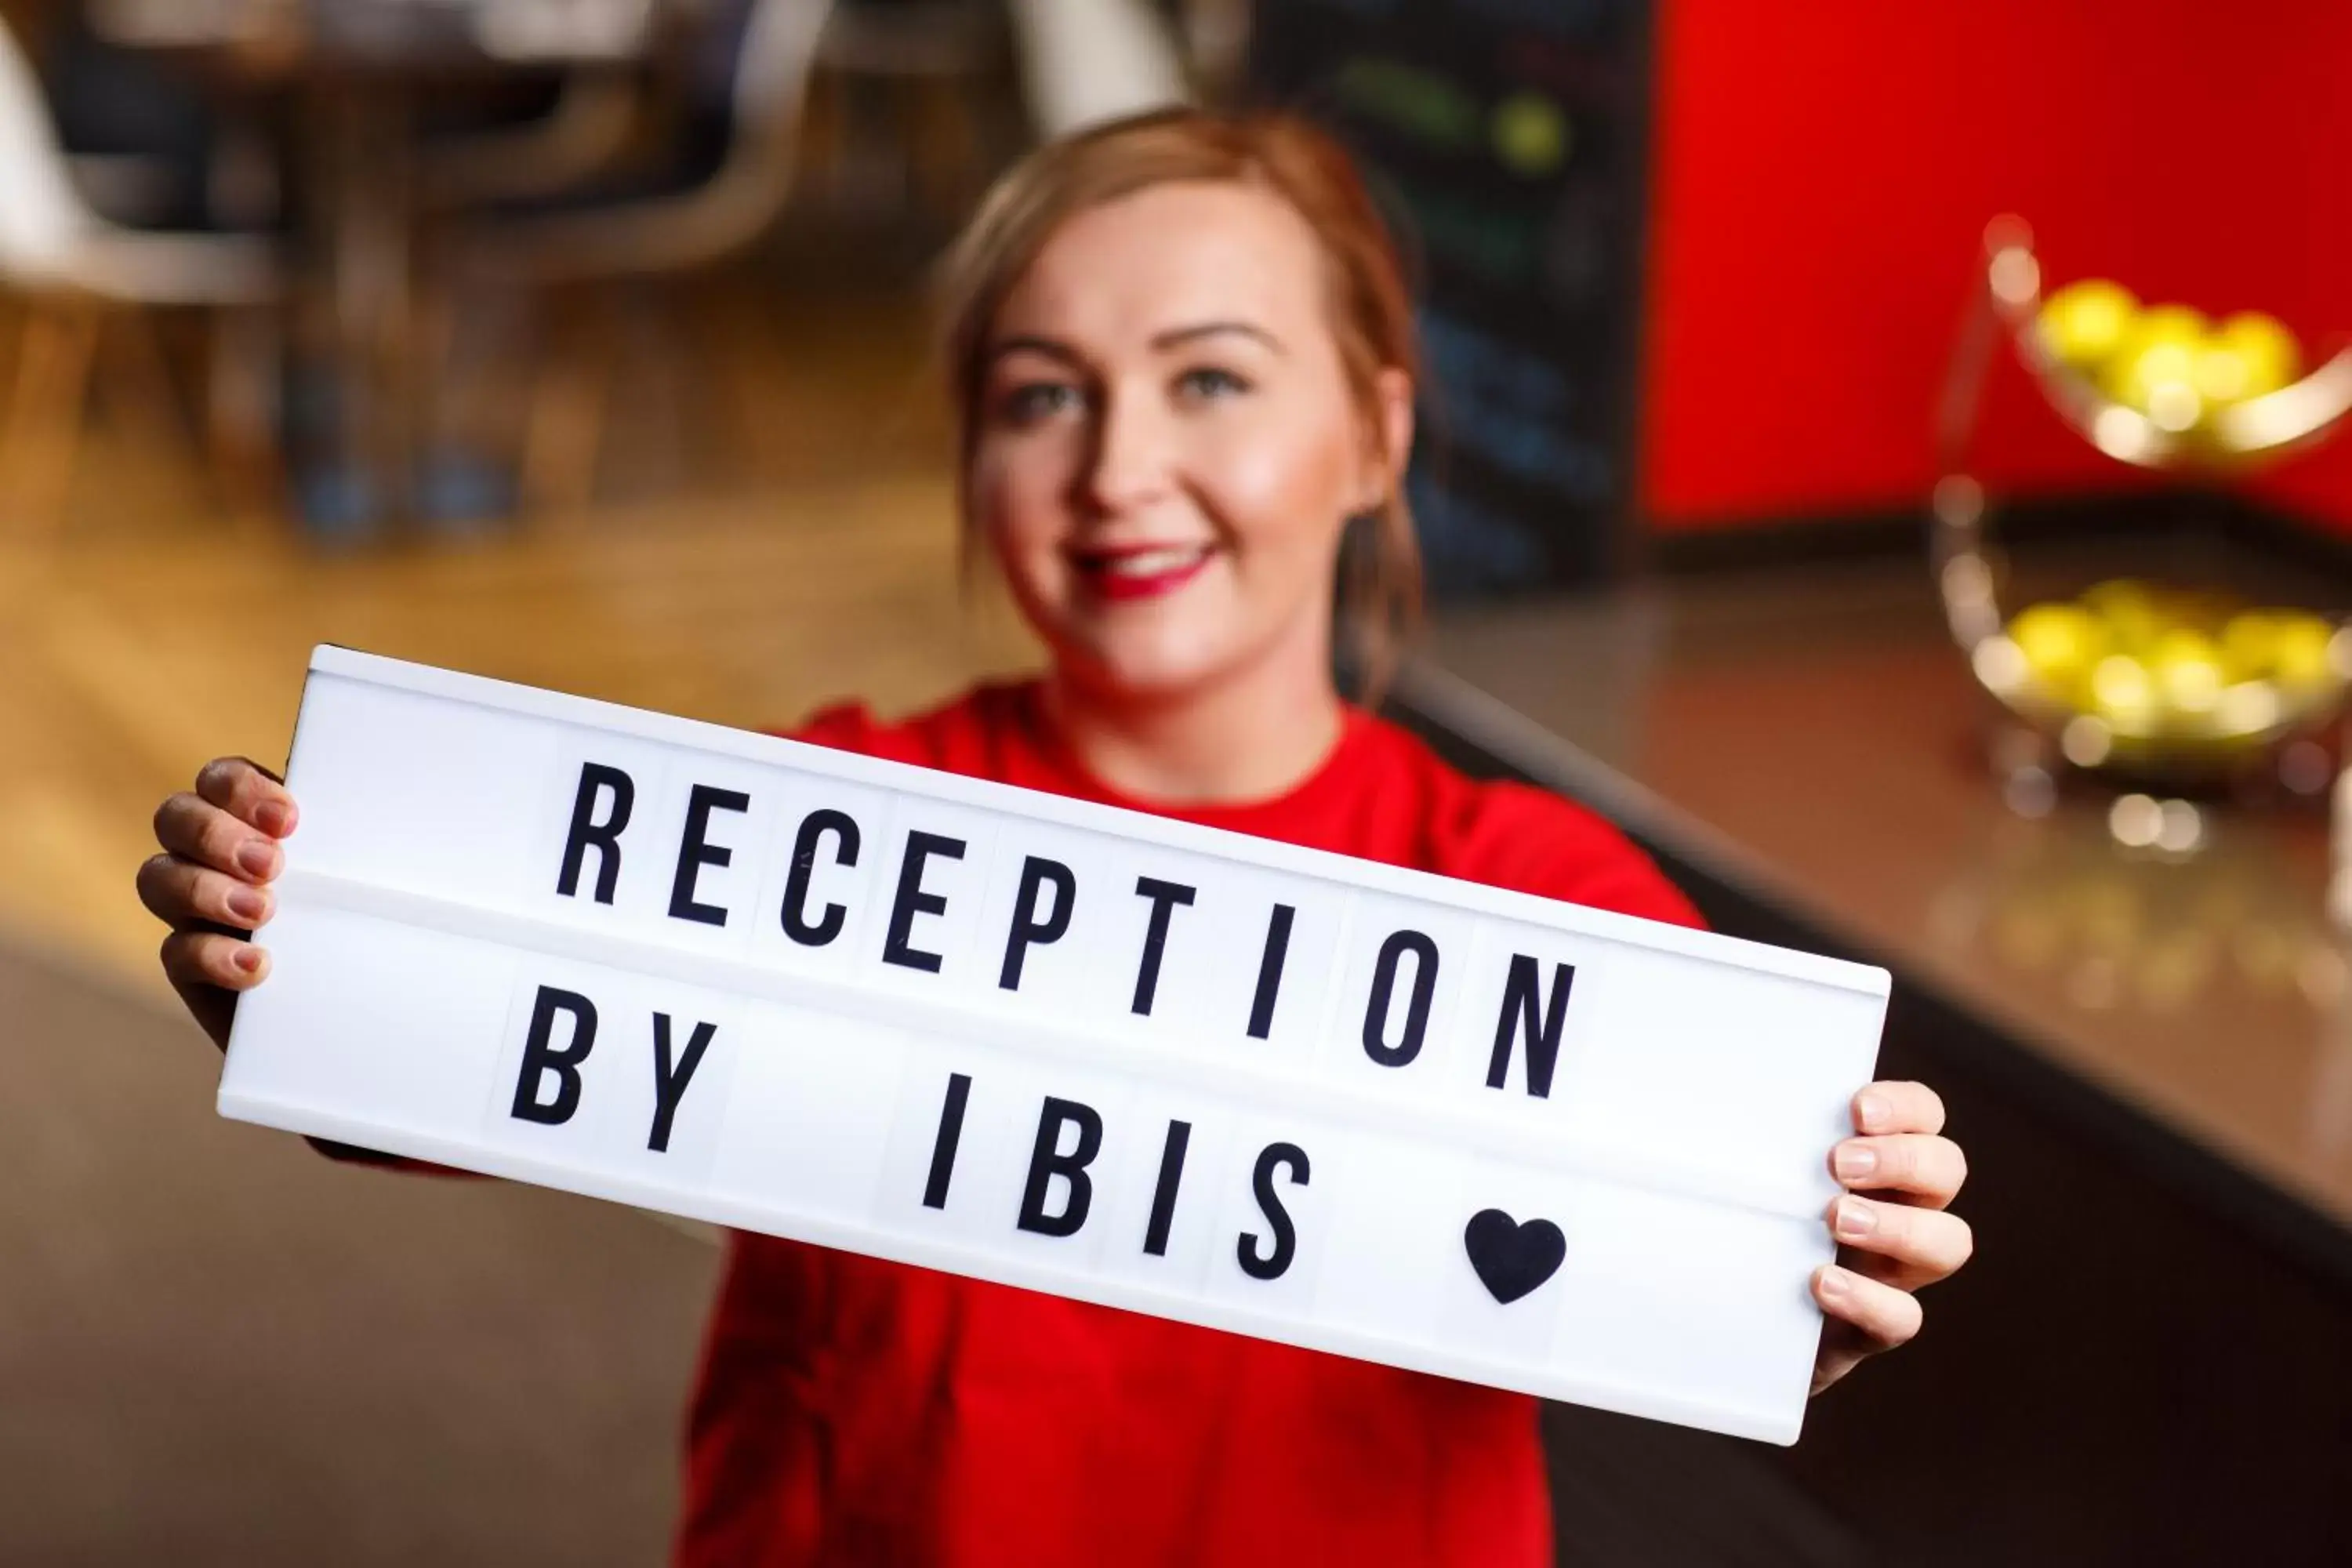 Staff in ibis Glasgow City Centre – Sauchiehall St